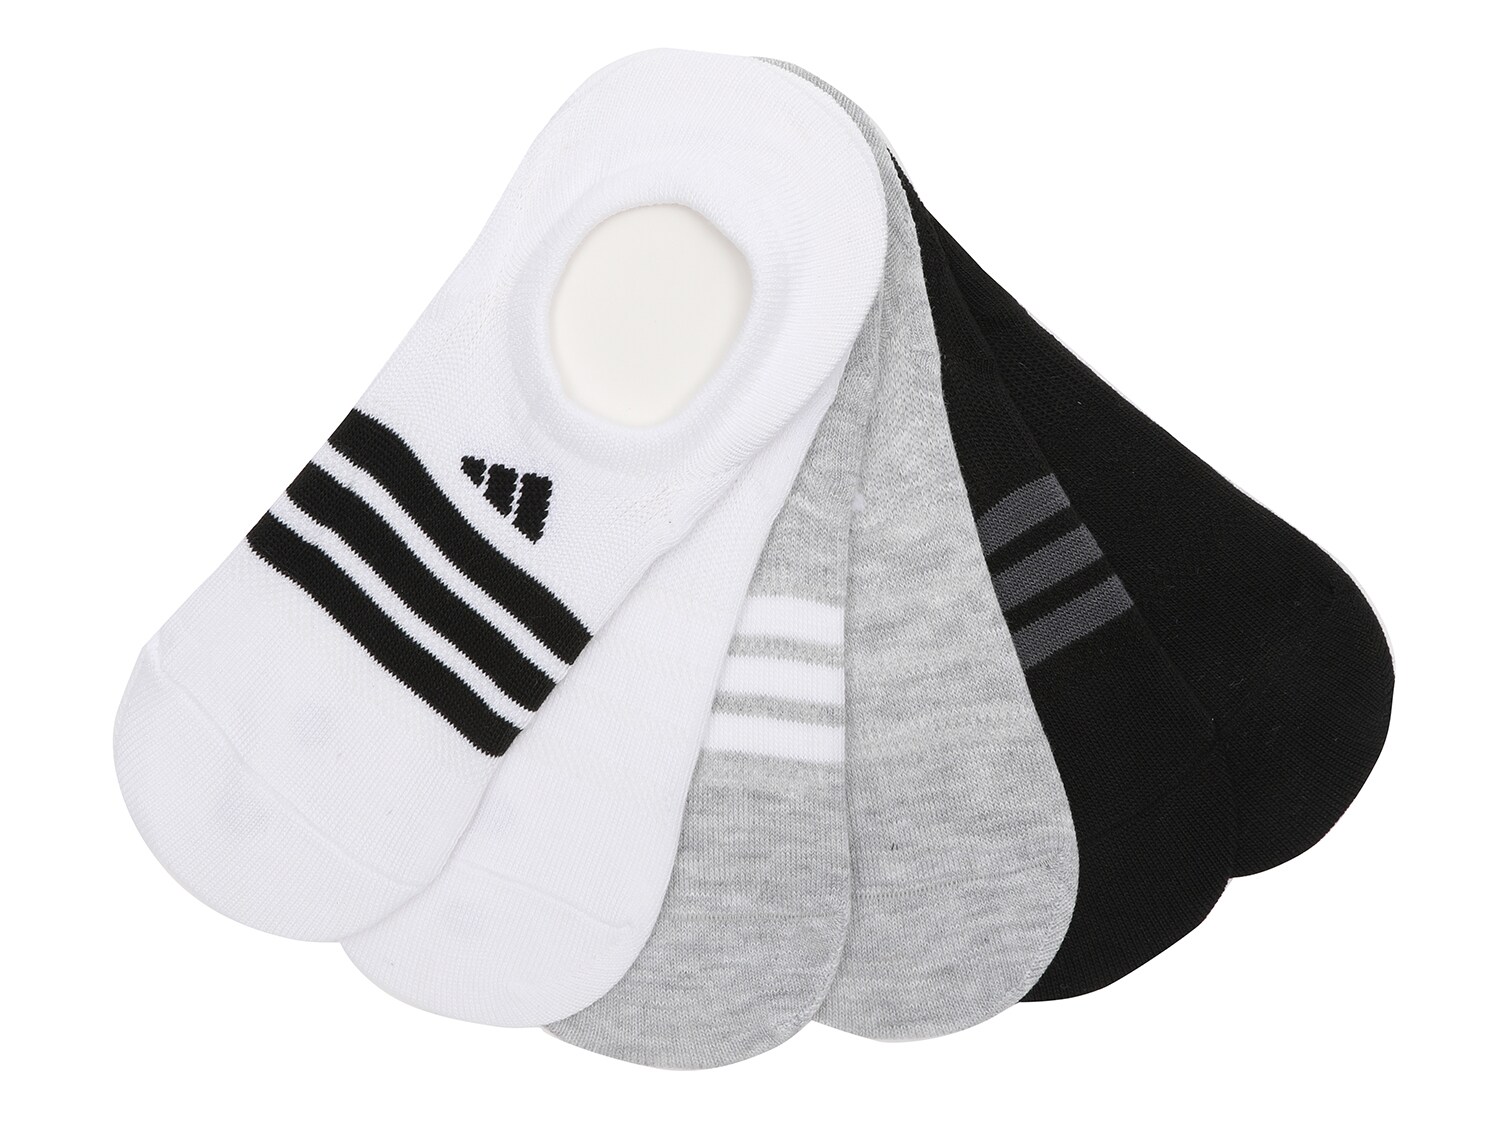 Комплект из 6 пар носков Adidas Superlite, белый/серый/черный